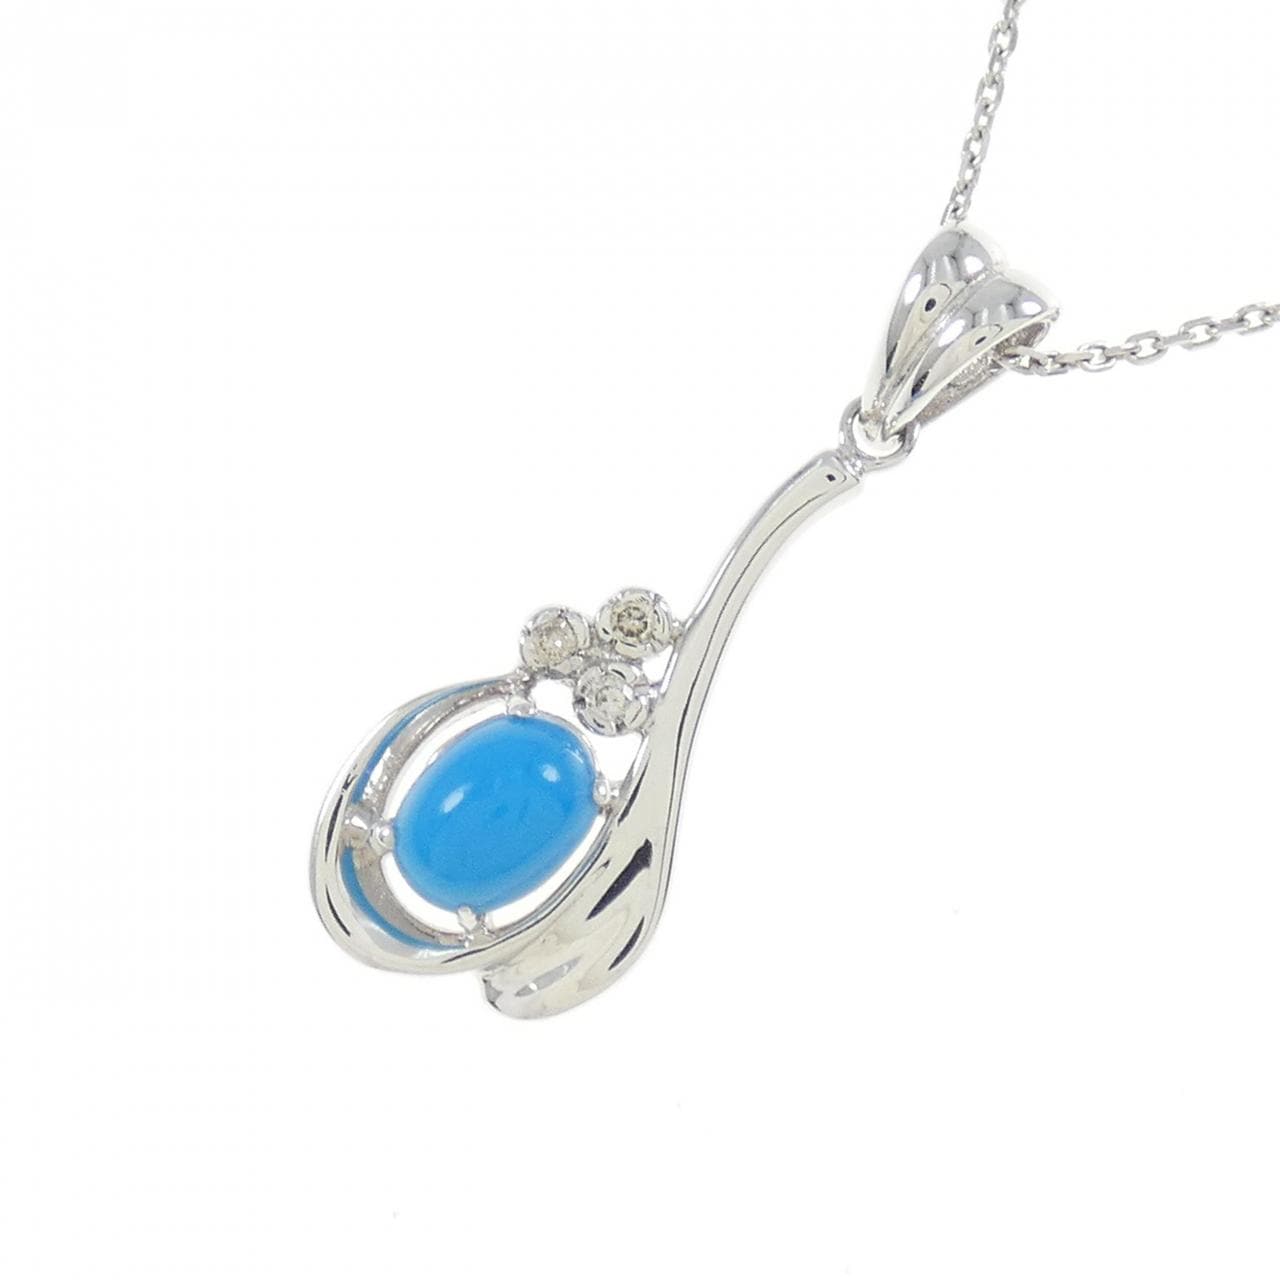 K18WG/750WG turquoise necklace